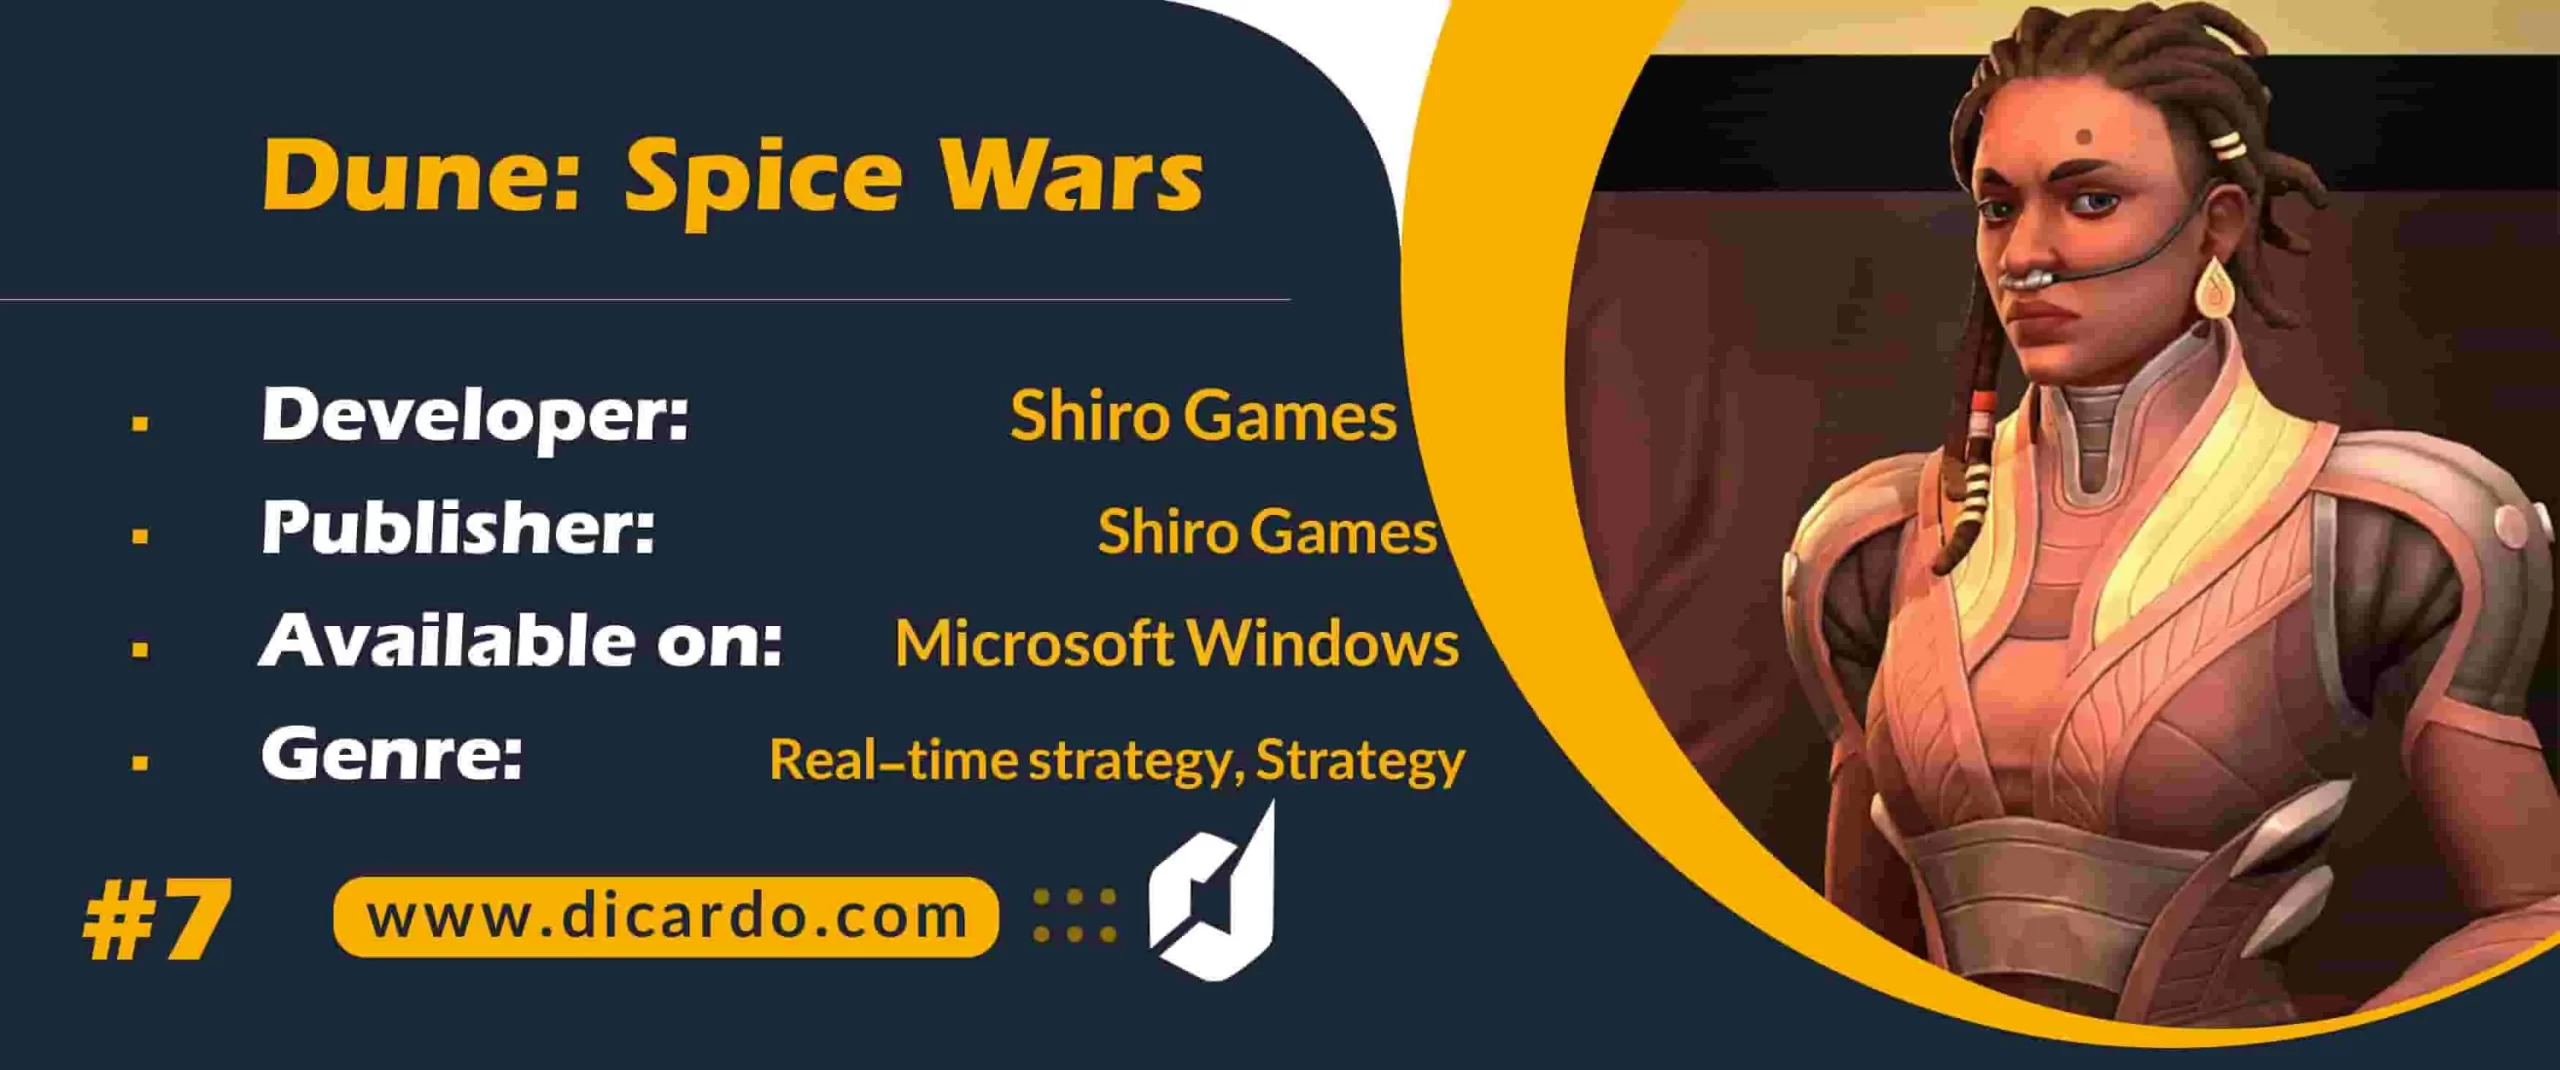 #7 دون: اسپایس وارز (Dune: Spice Wars (April 26 از دیگر بازیهای 2022 با یک استراتژی علمی تخیلی